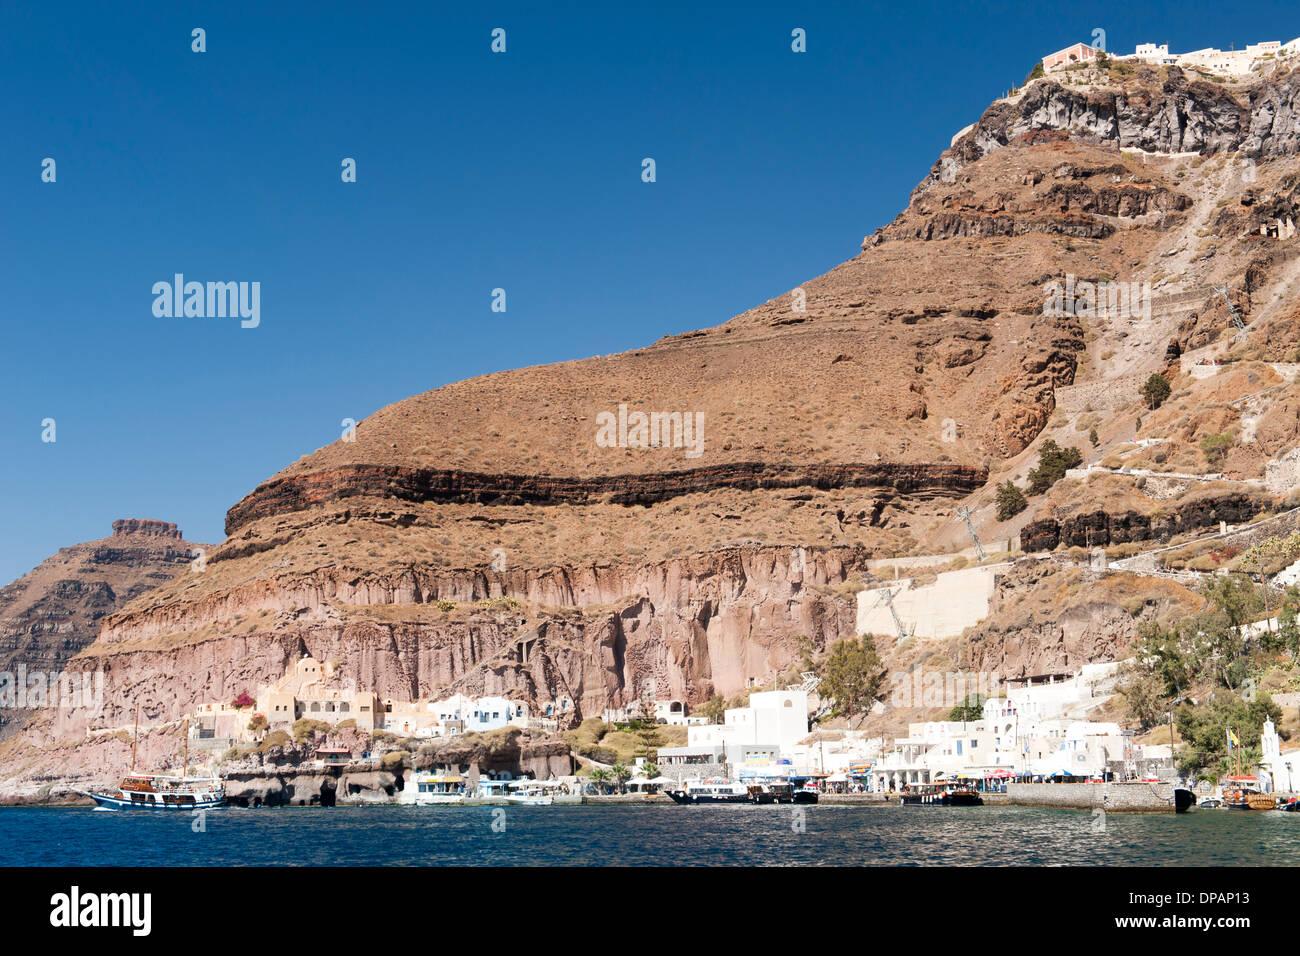 El viejo puerto de Fira en la isla griega de Santorini. Foto de stock